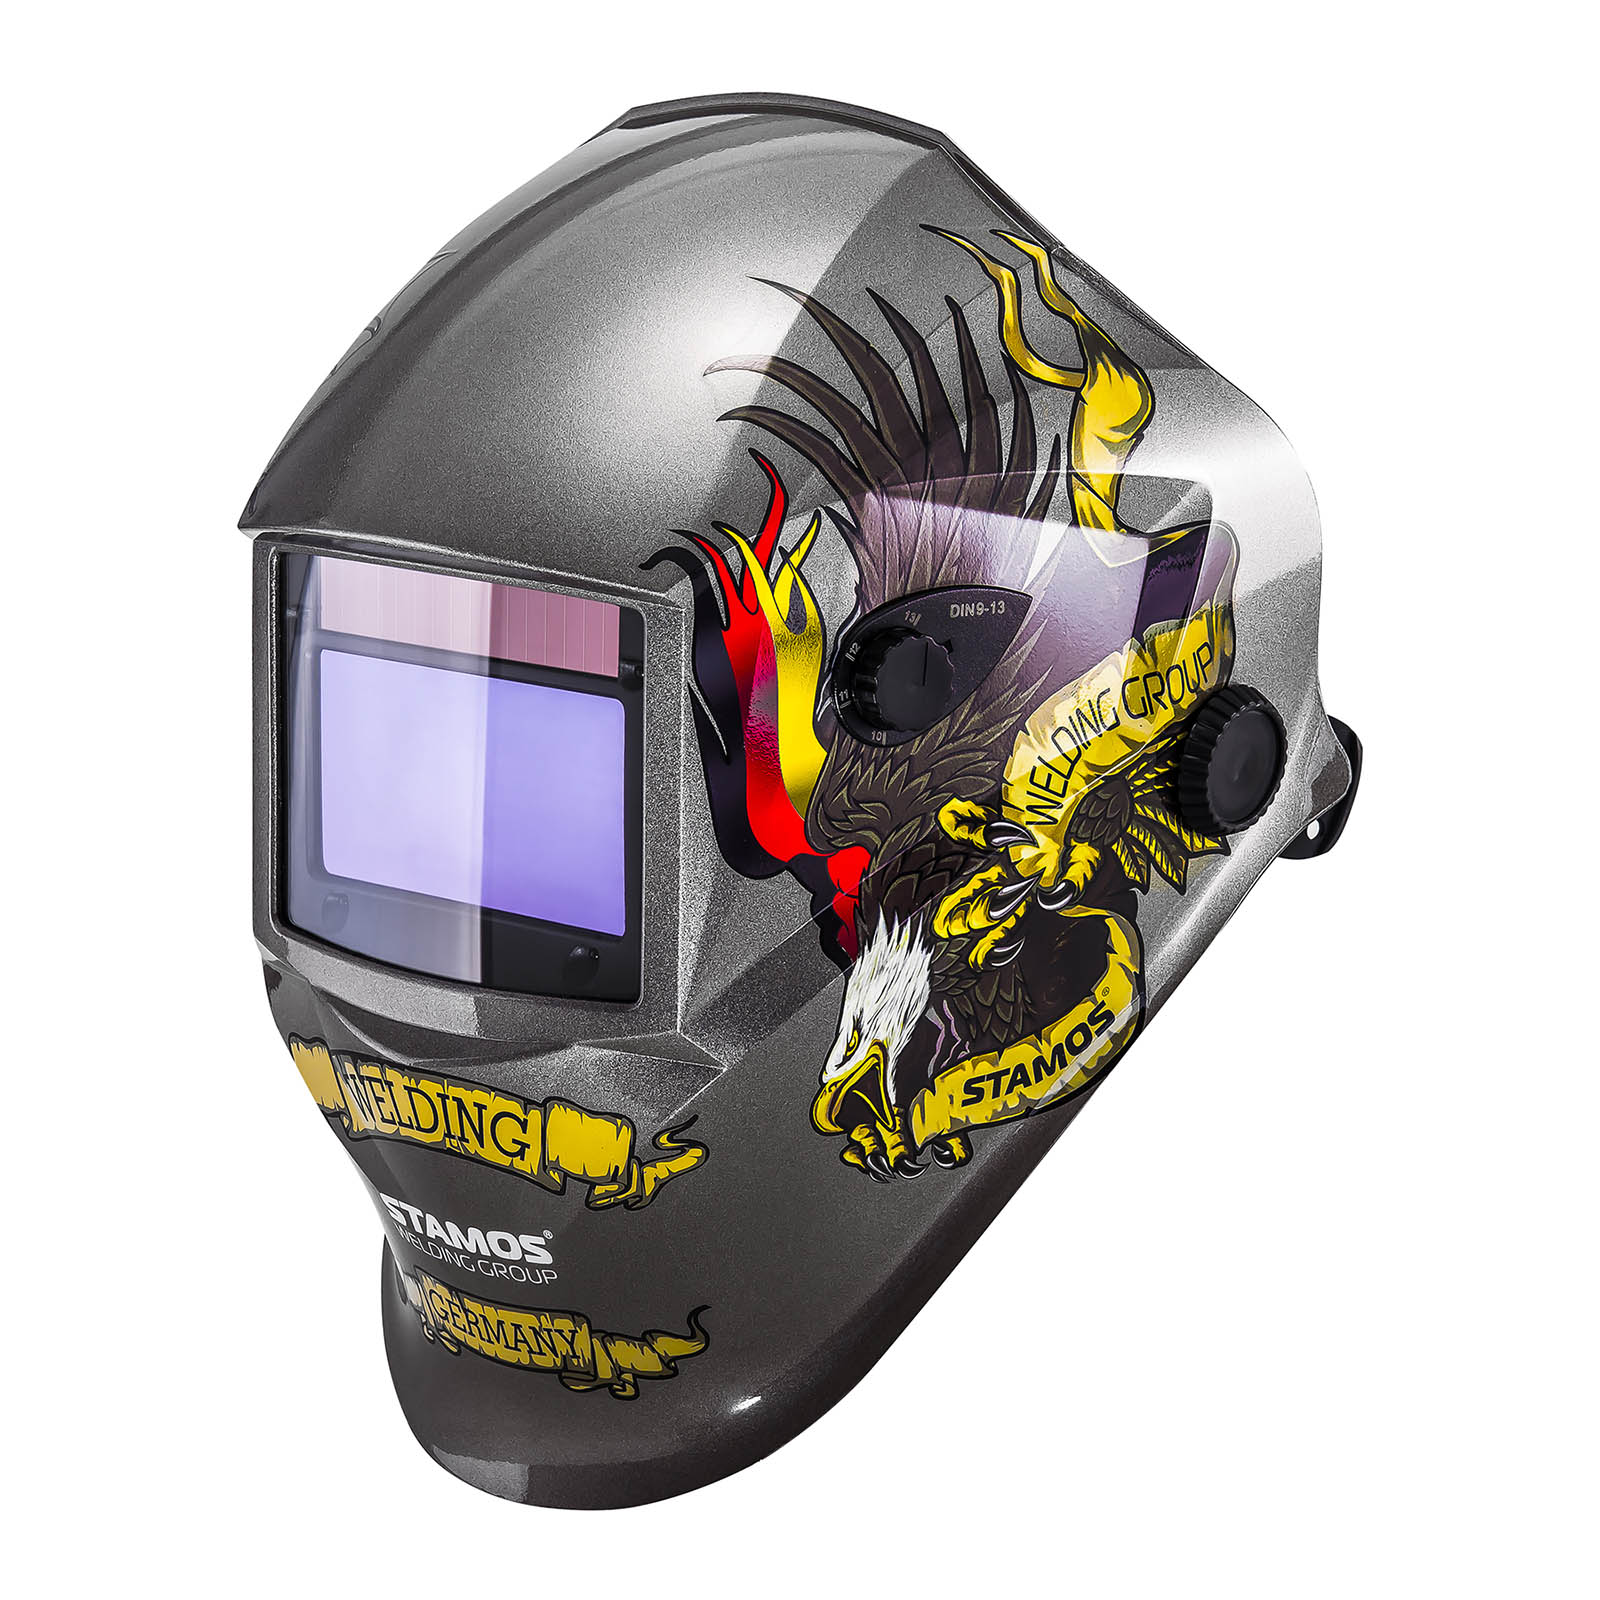 Svařovací set MIG/MAG svářečka - 250 A - 230 V - přenosná + Svářecí helma- Eagle Eye - ADVANCED SERIES